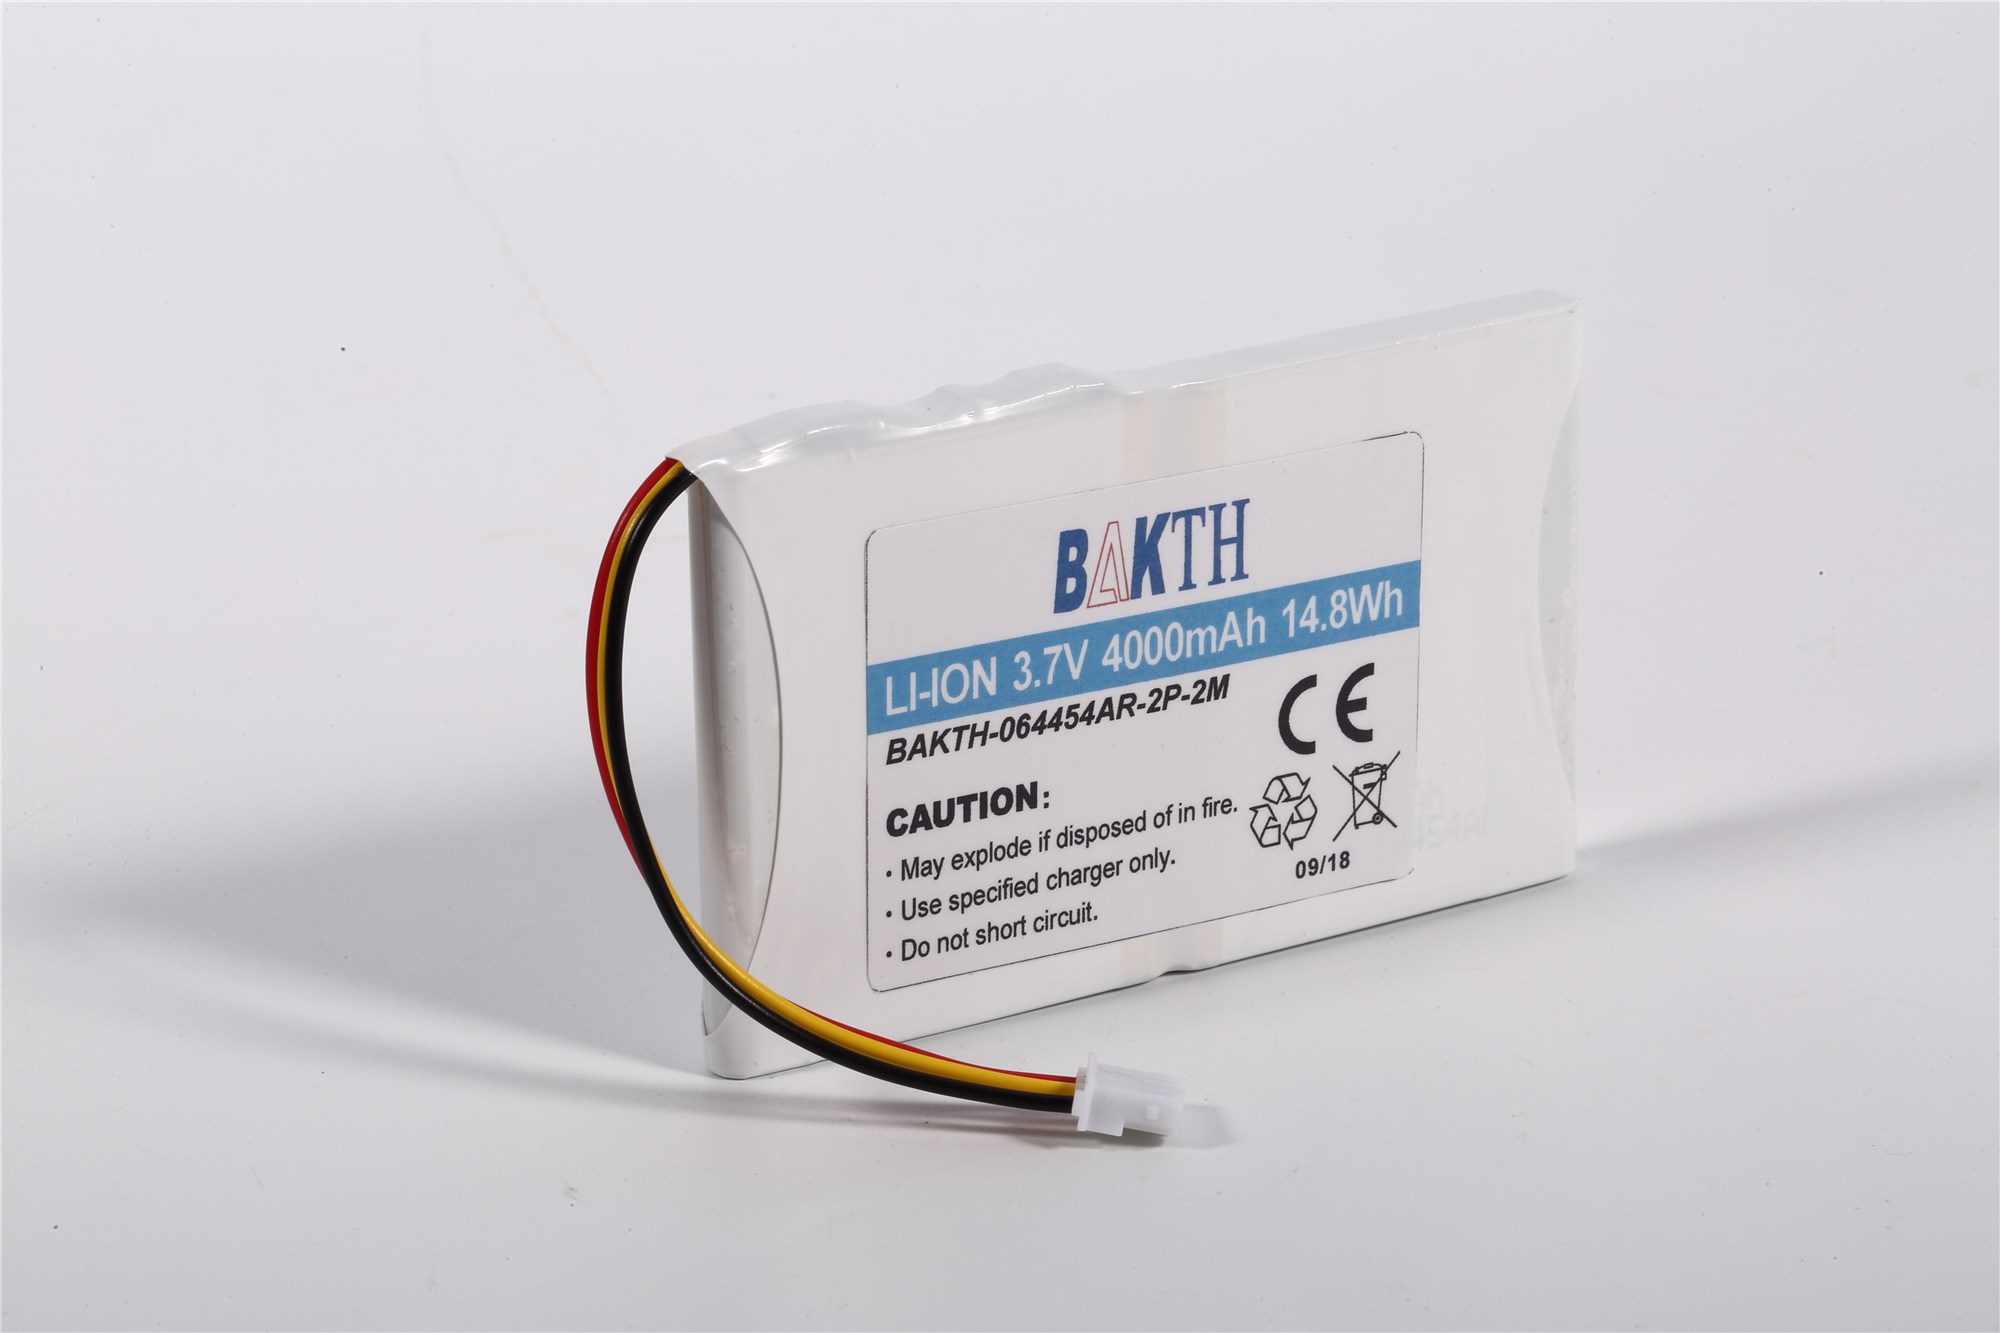 BAKTH-064454-2P-2M锂离子电池组定制锂离子电池包